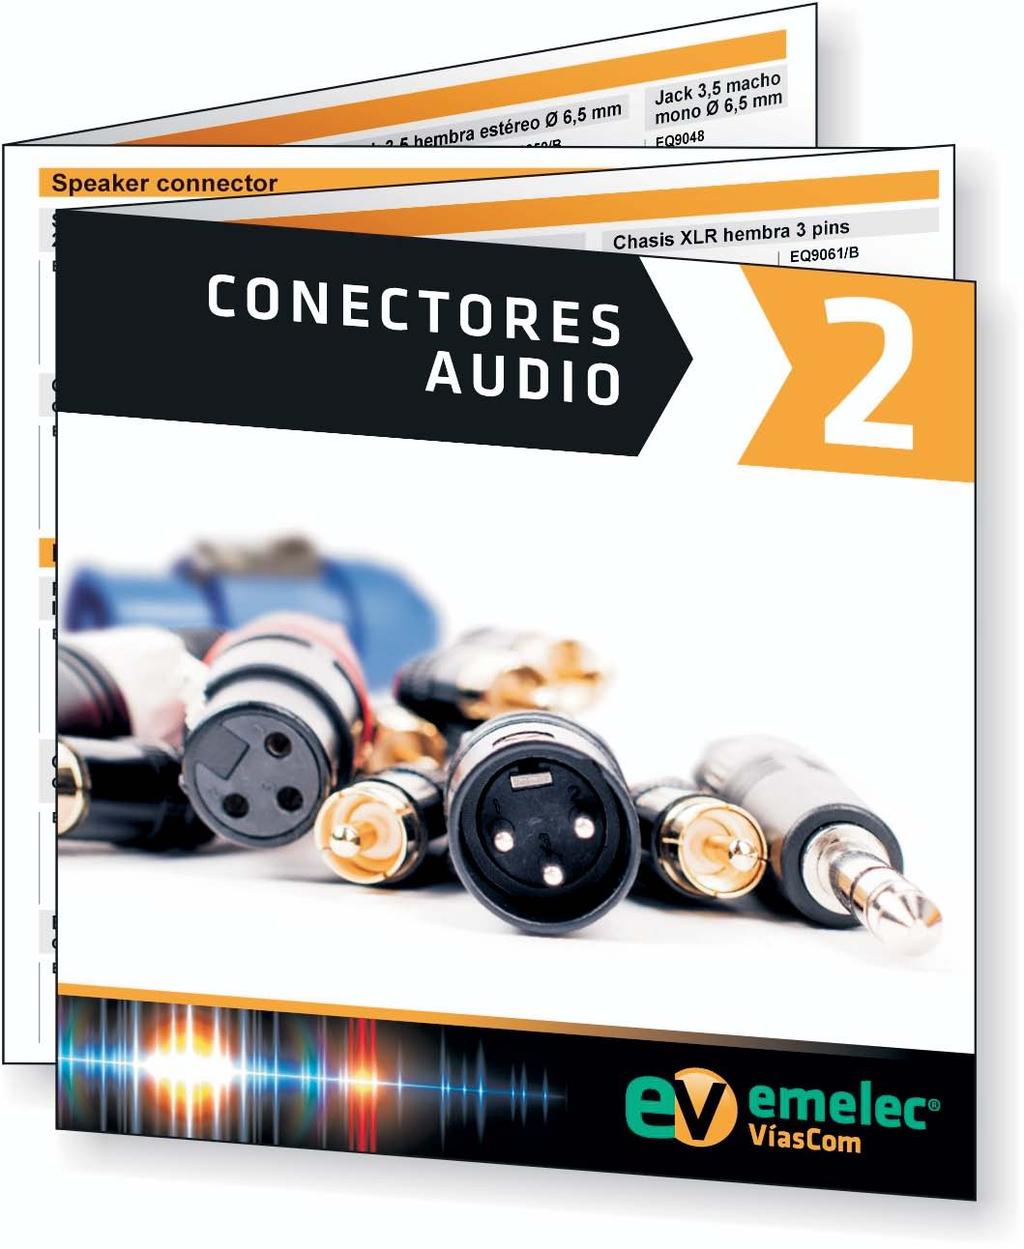 Conectores Audio Los conectores metálicos de Audio Emelec VíasCom poseen excelentes prestaciones de fiabilidad